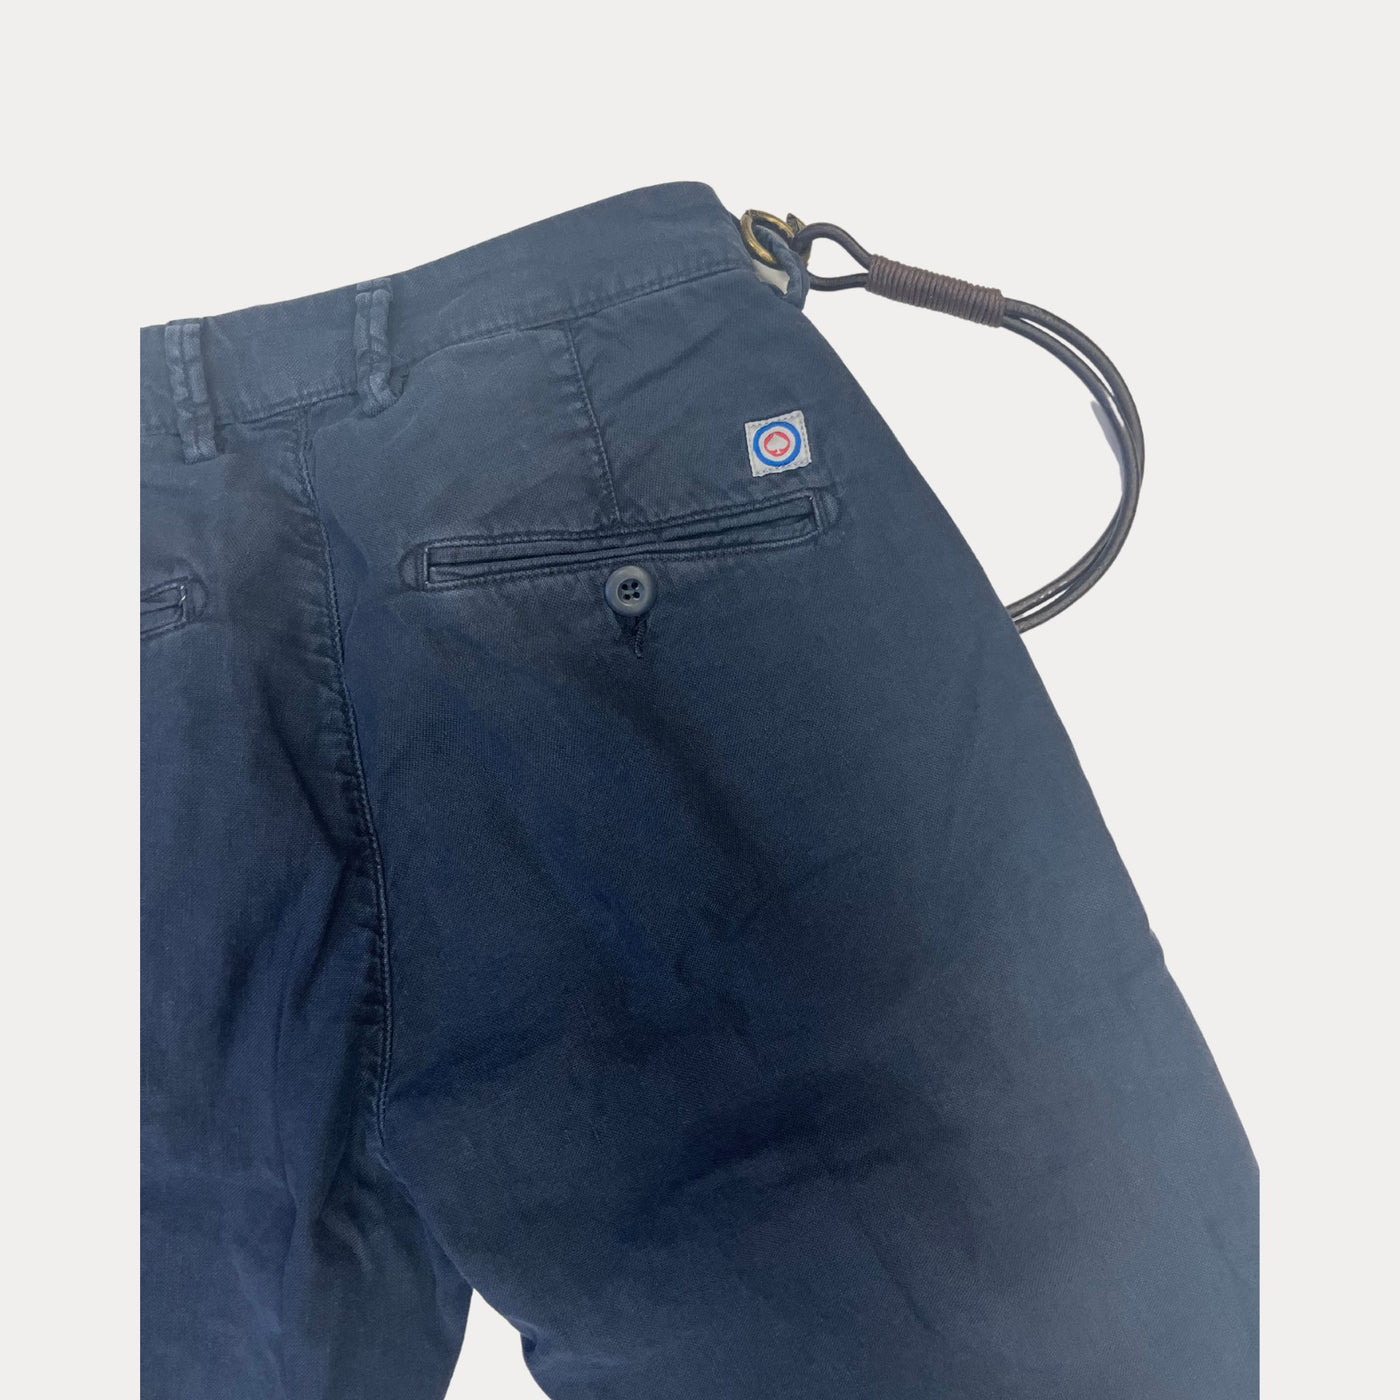 Pantalone da uomo navy firmato Modfitters dettaglio tasca sul retro